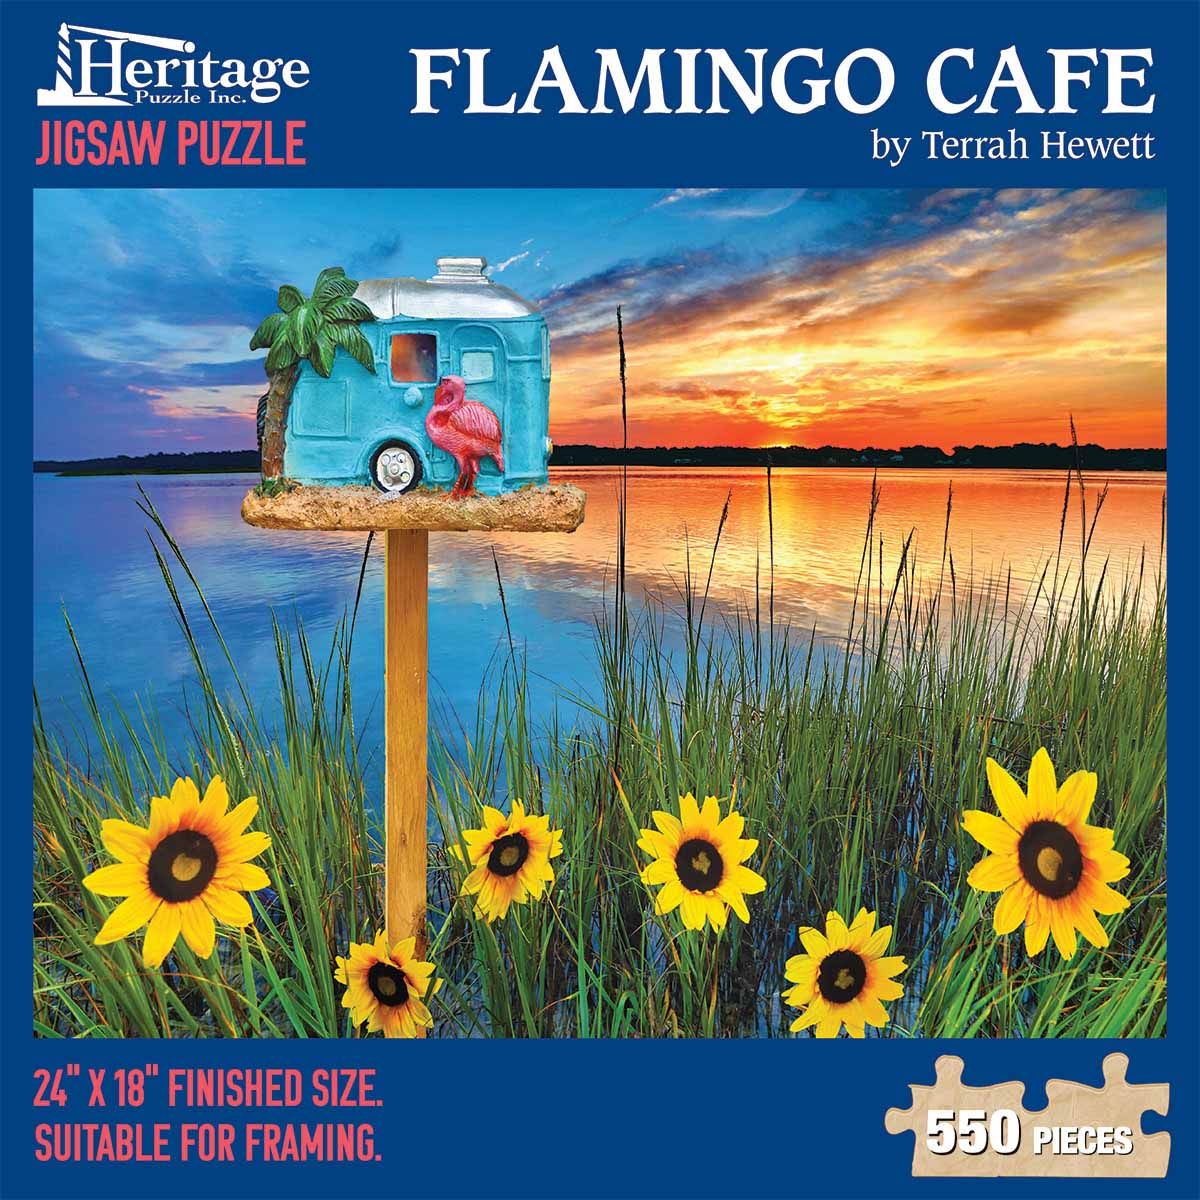 Flamingo Café